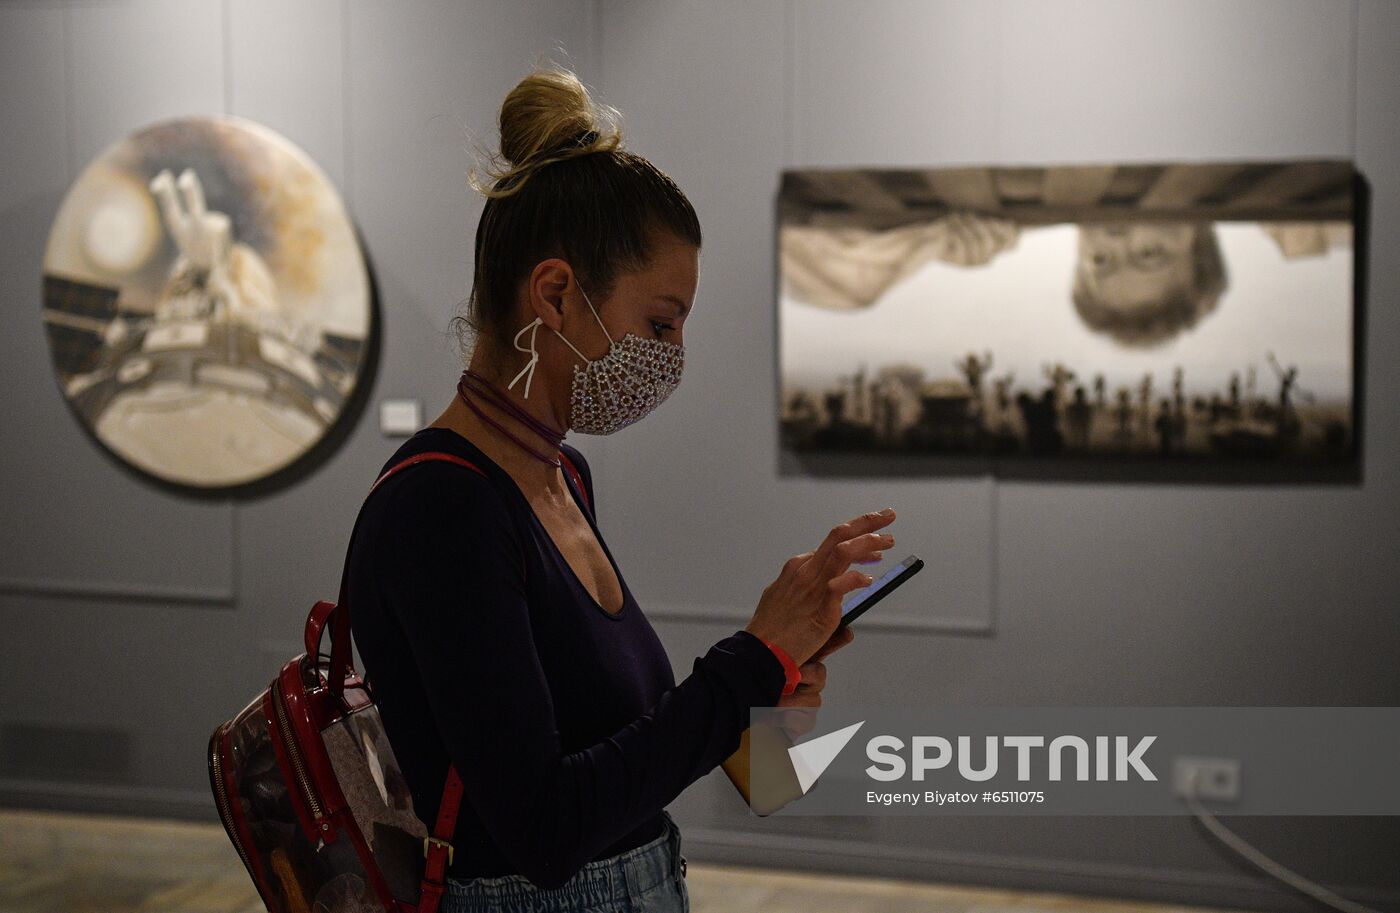 Russia Art Exhibition